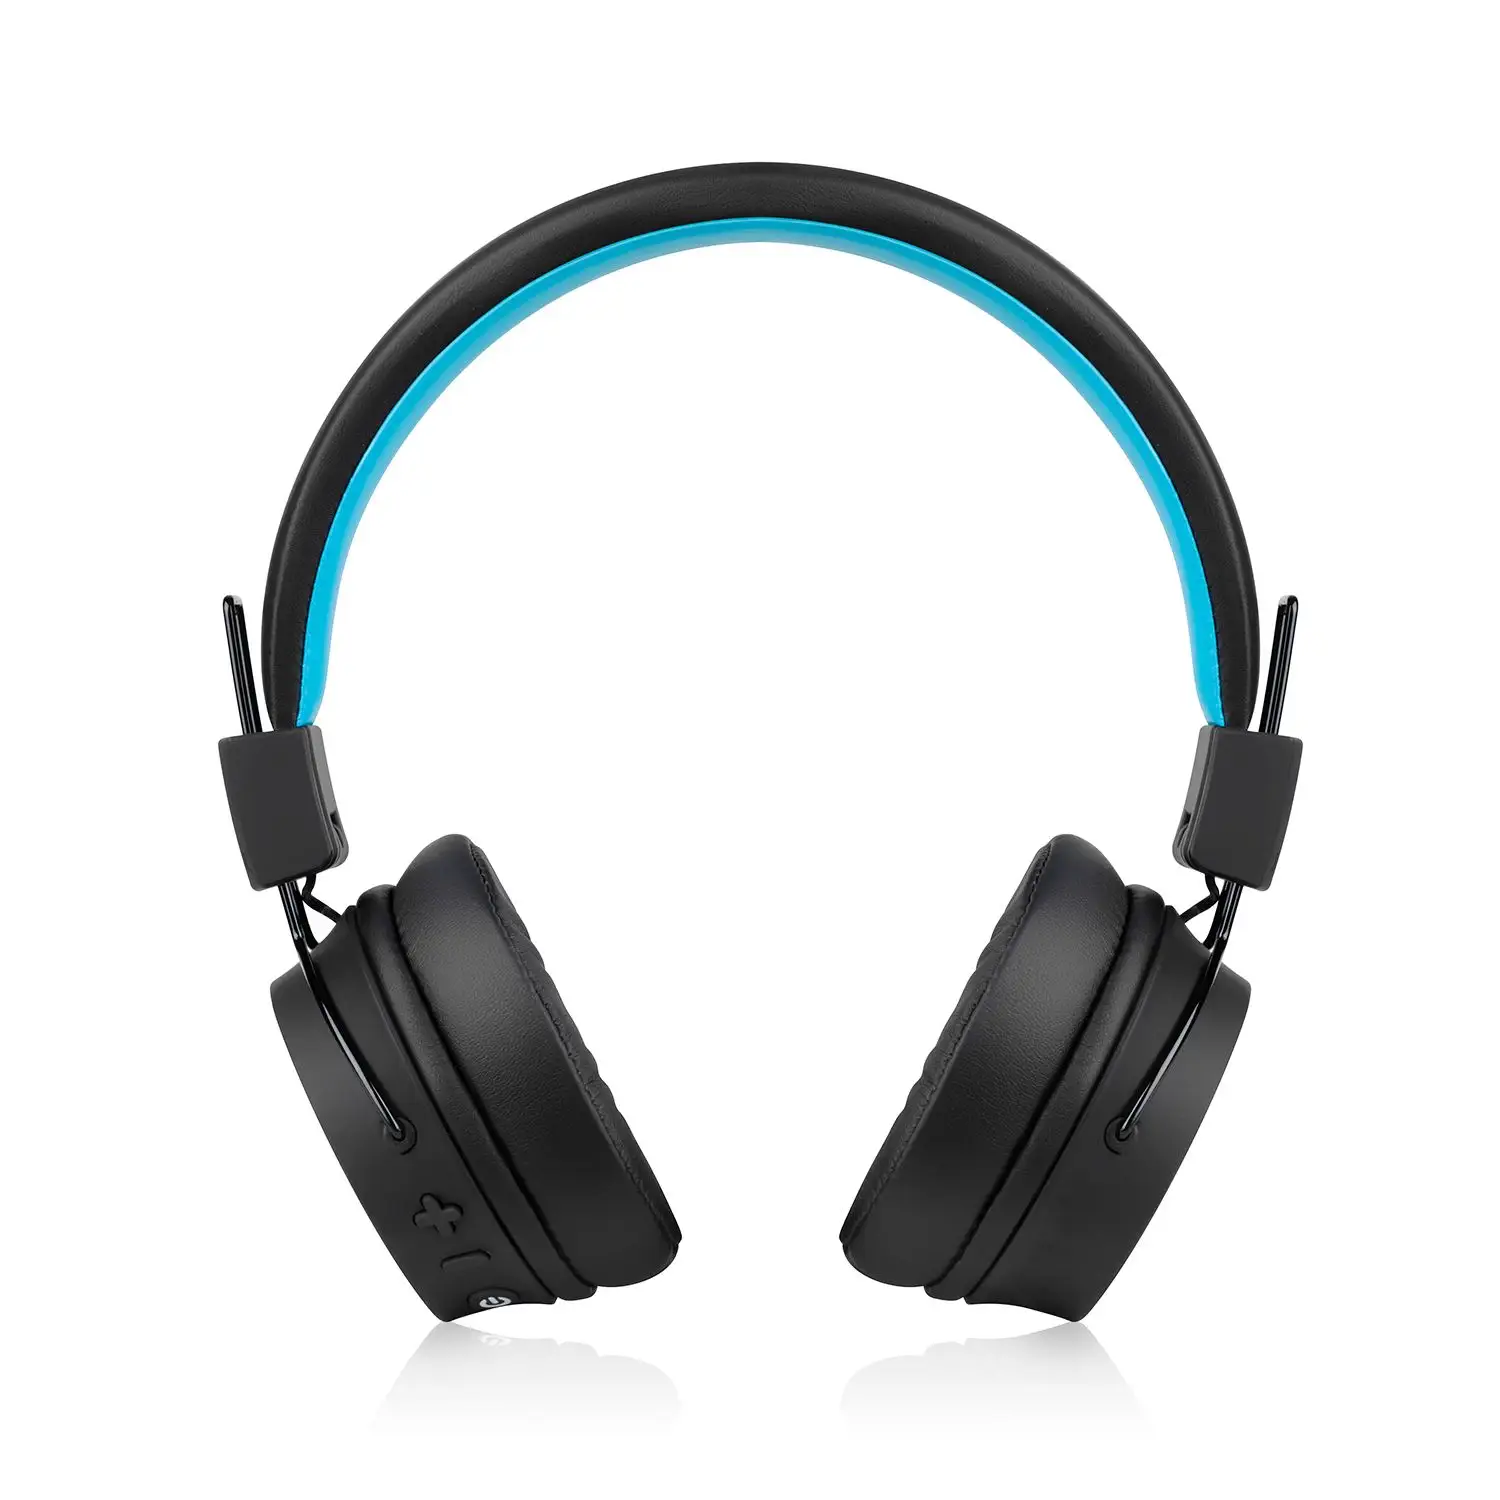  Bluetooth sluchátka niceboy hive joy 3 handsfree mikrofon aplikace ion ekvalizér skvělý zvuk dlouhá výdrž na nabití hlasové ovládání lehká konstrukce 